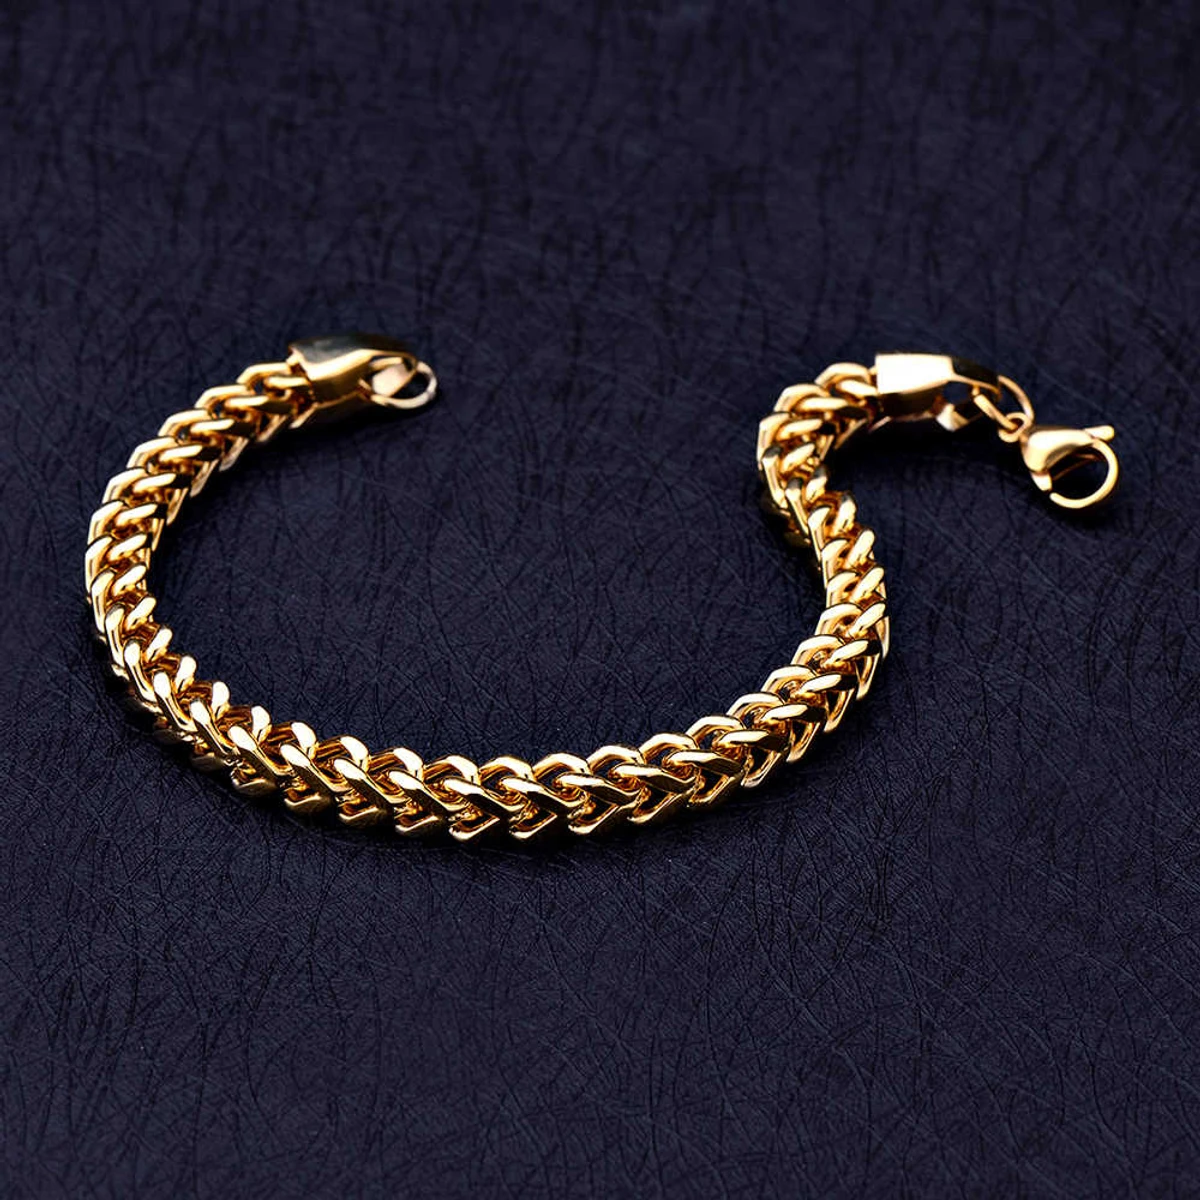 Square Snake CHain Bracelet For Men